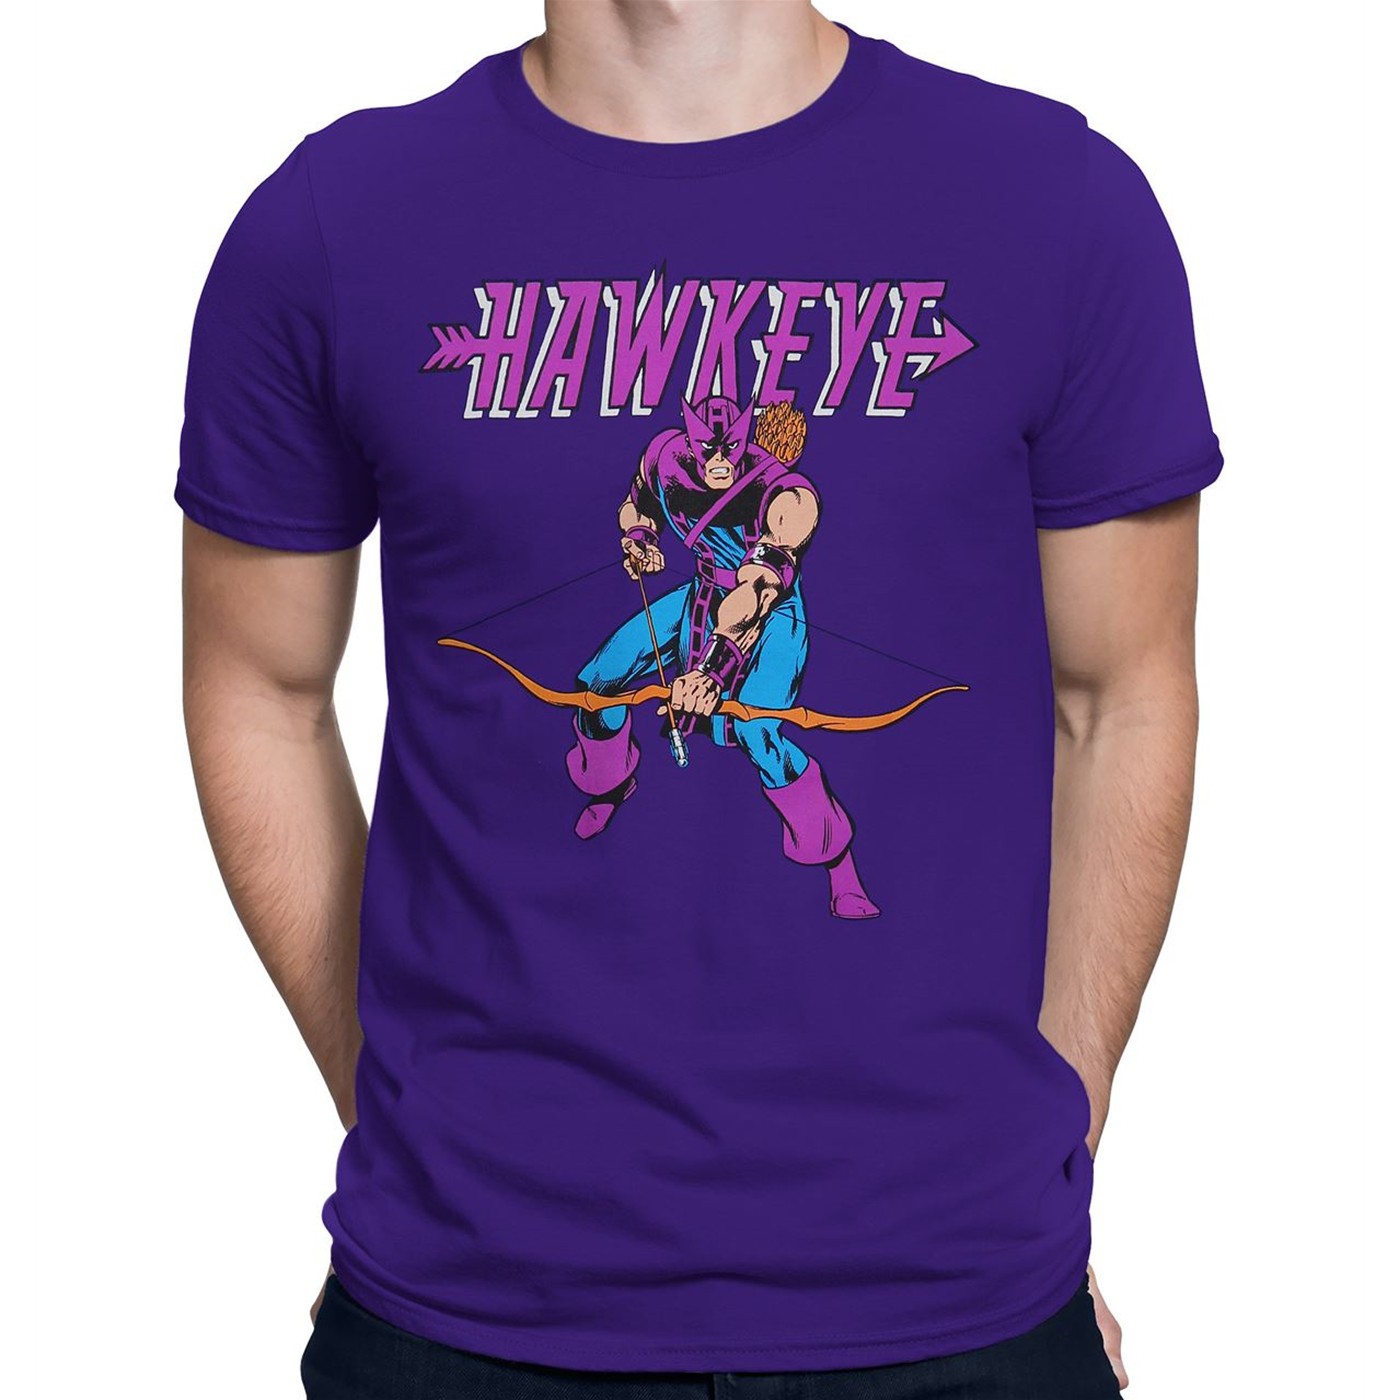 Hawkeye Retro Purple T-Shirt